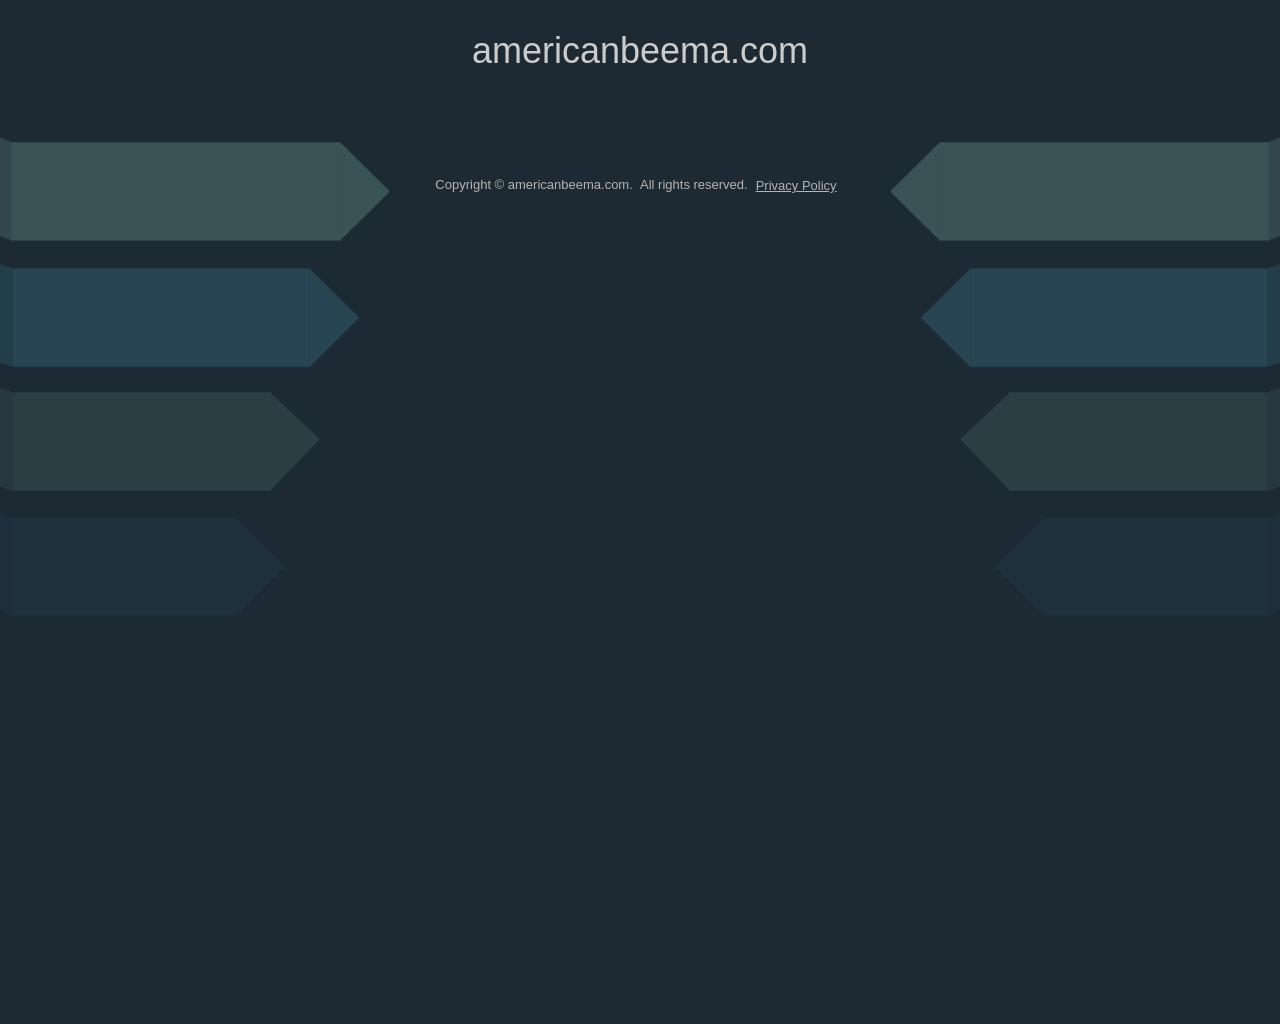 americanbeema.com